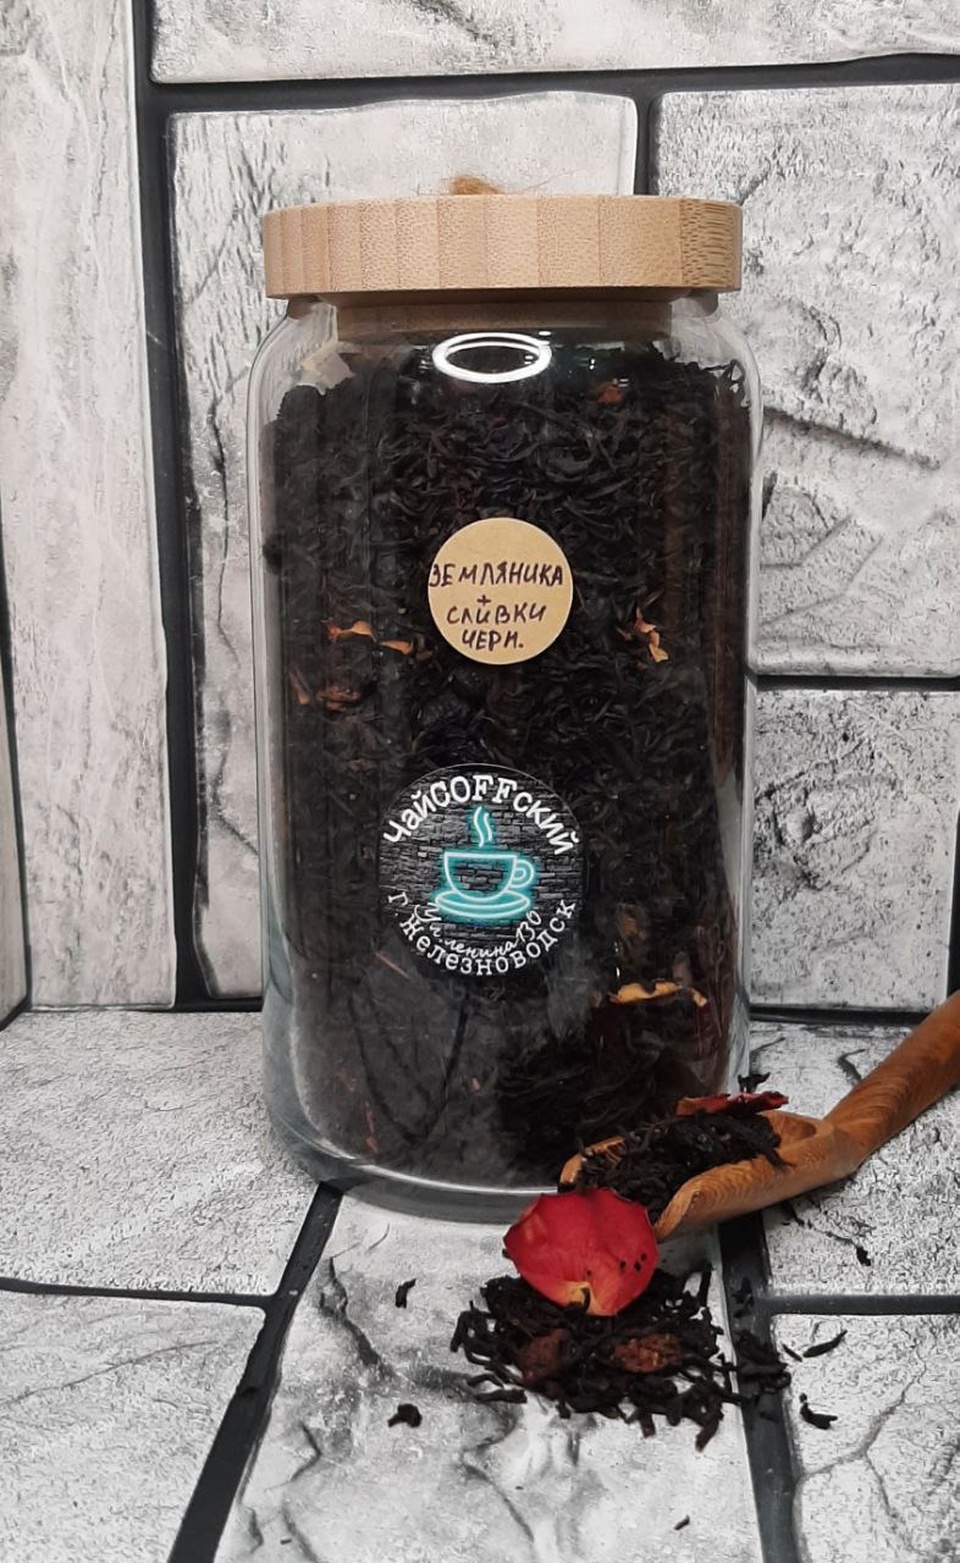 Чай черный "Земляника со сливками" - 230 ₽, заказать онлайн.